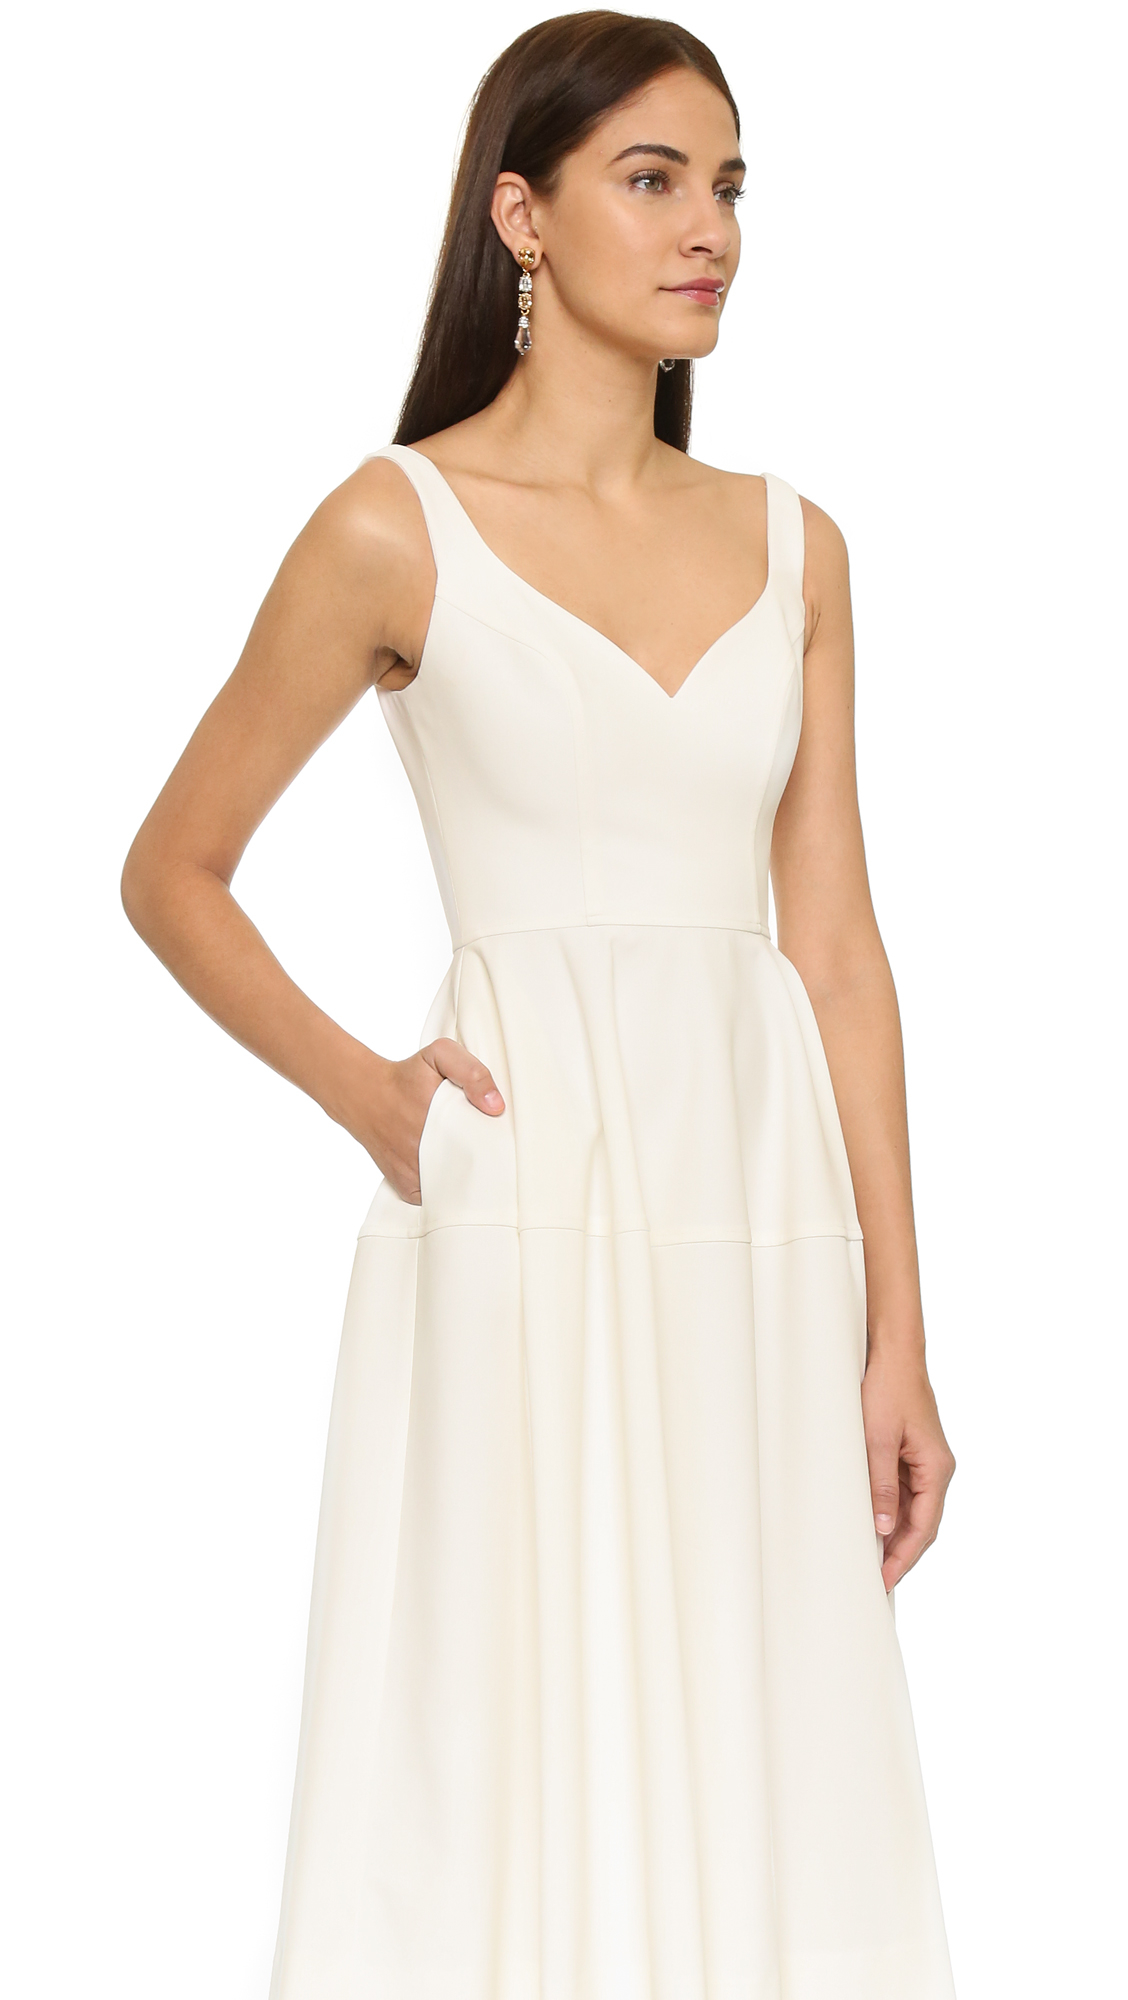 jill stuart white dress